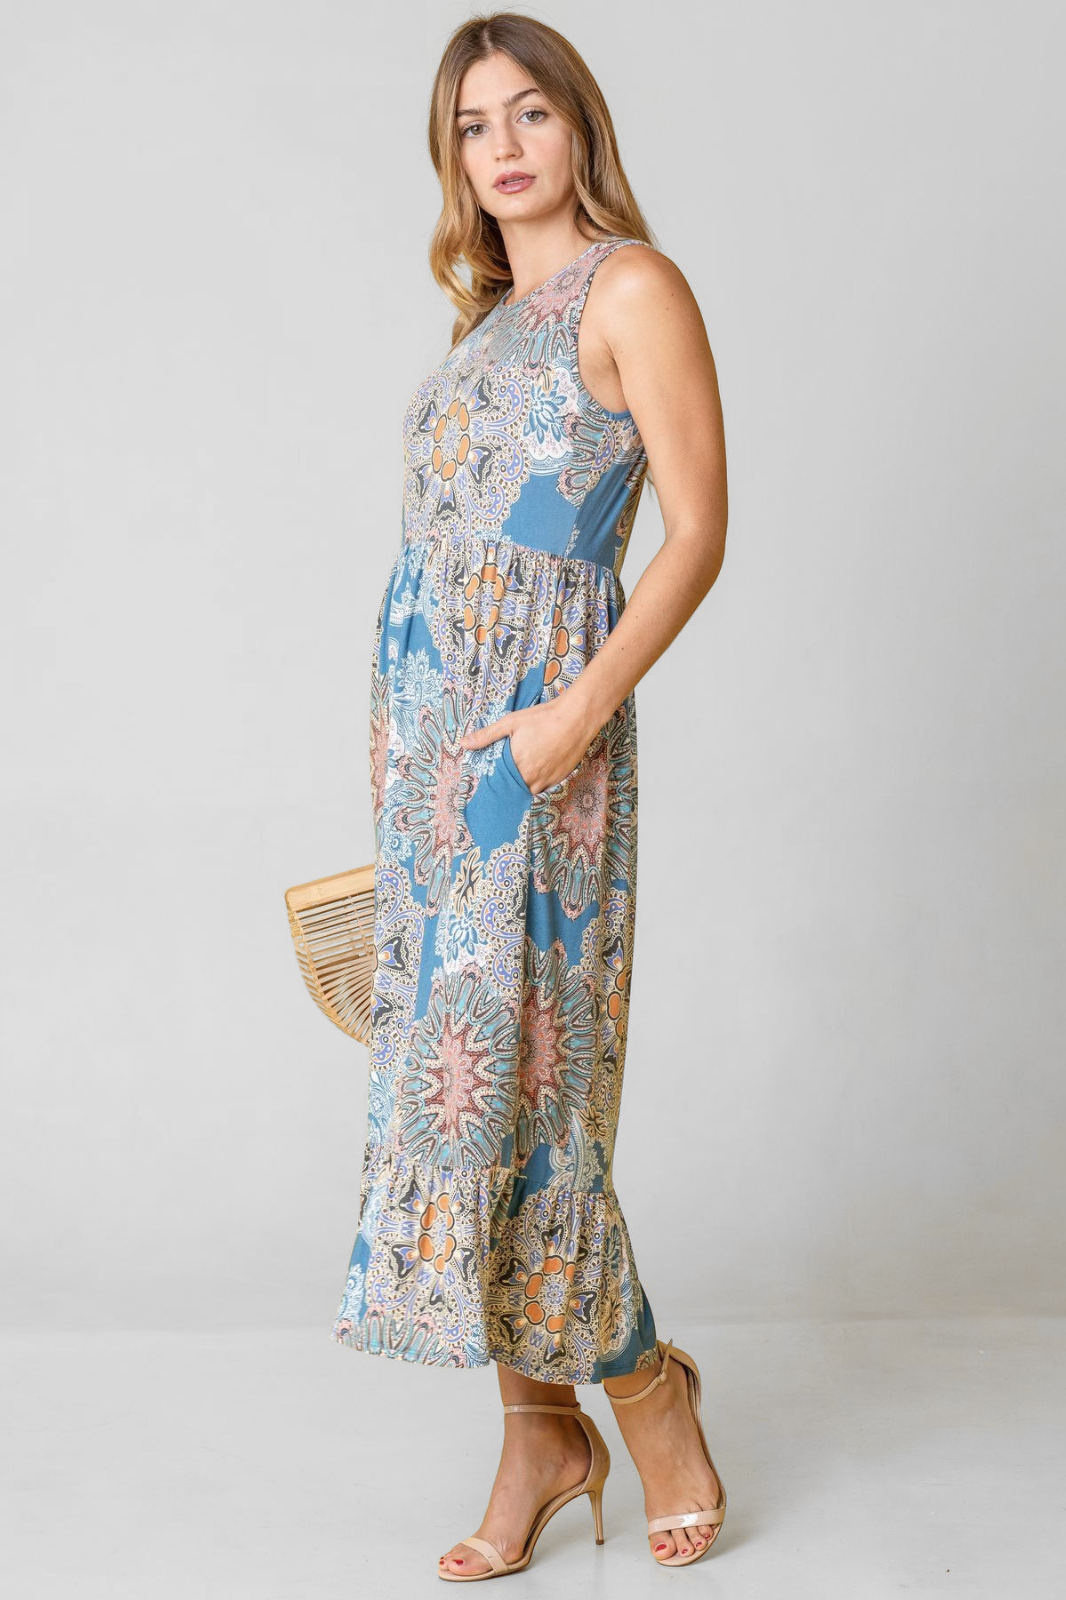 Plus Print Sleeveless Ruffled Hem Tea-Length Dress